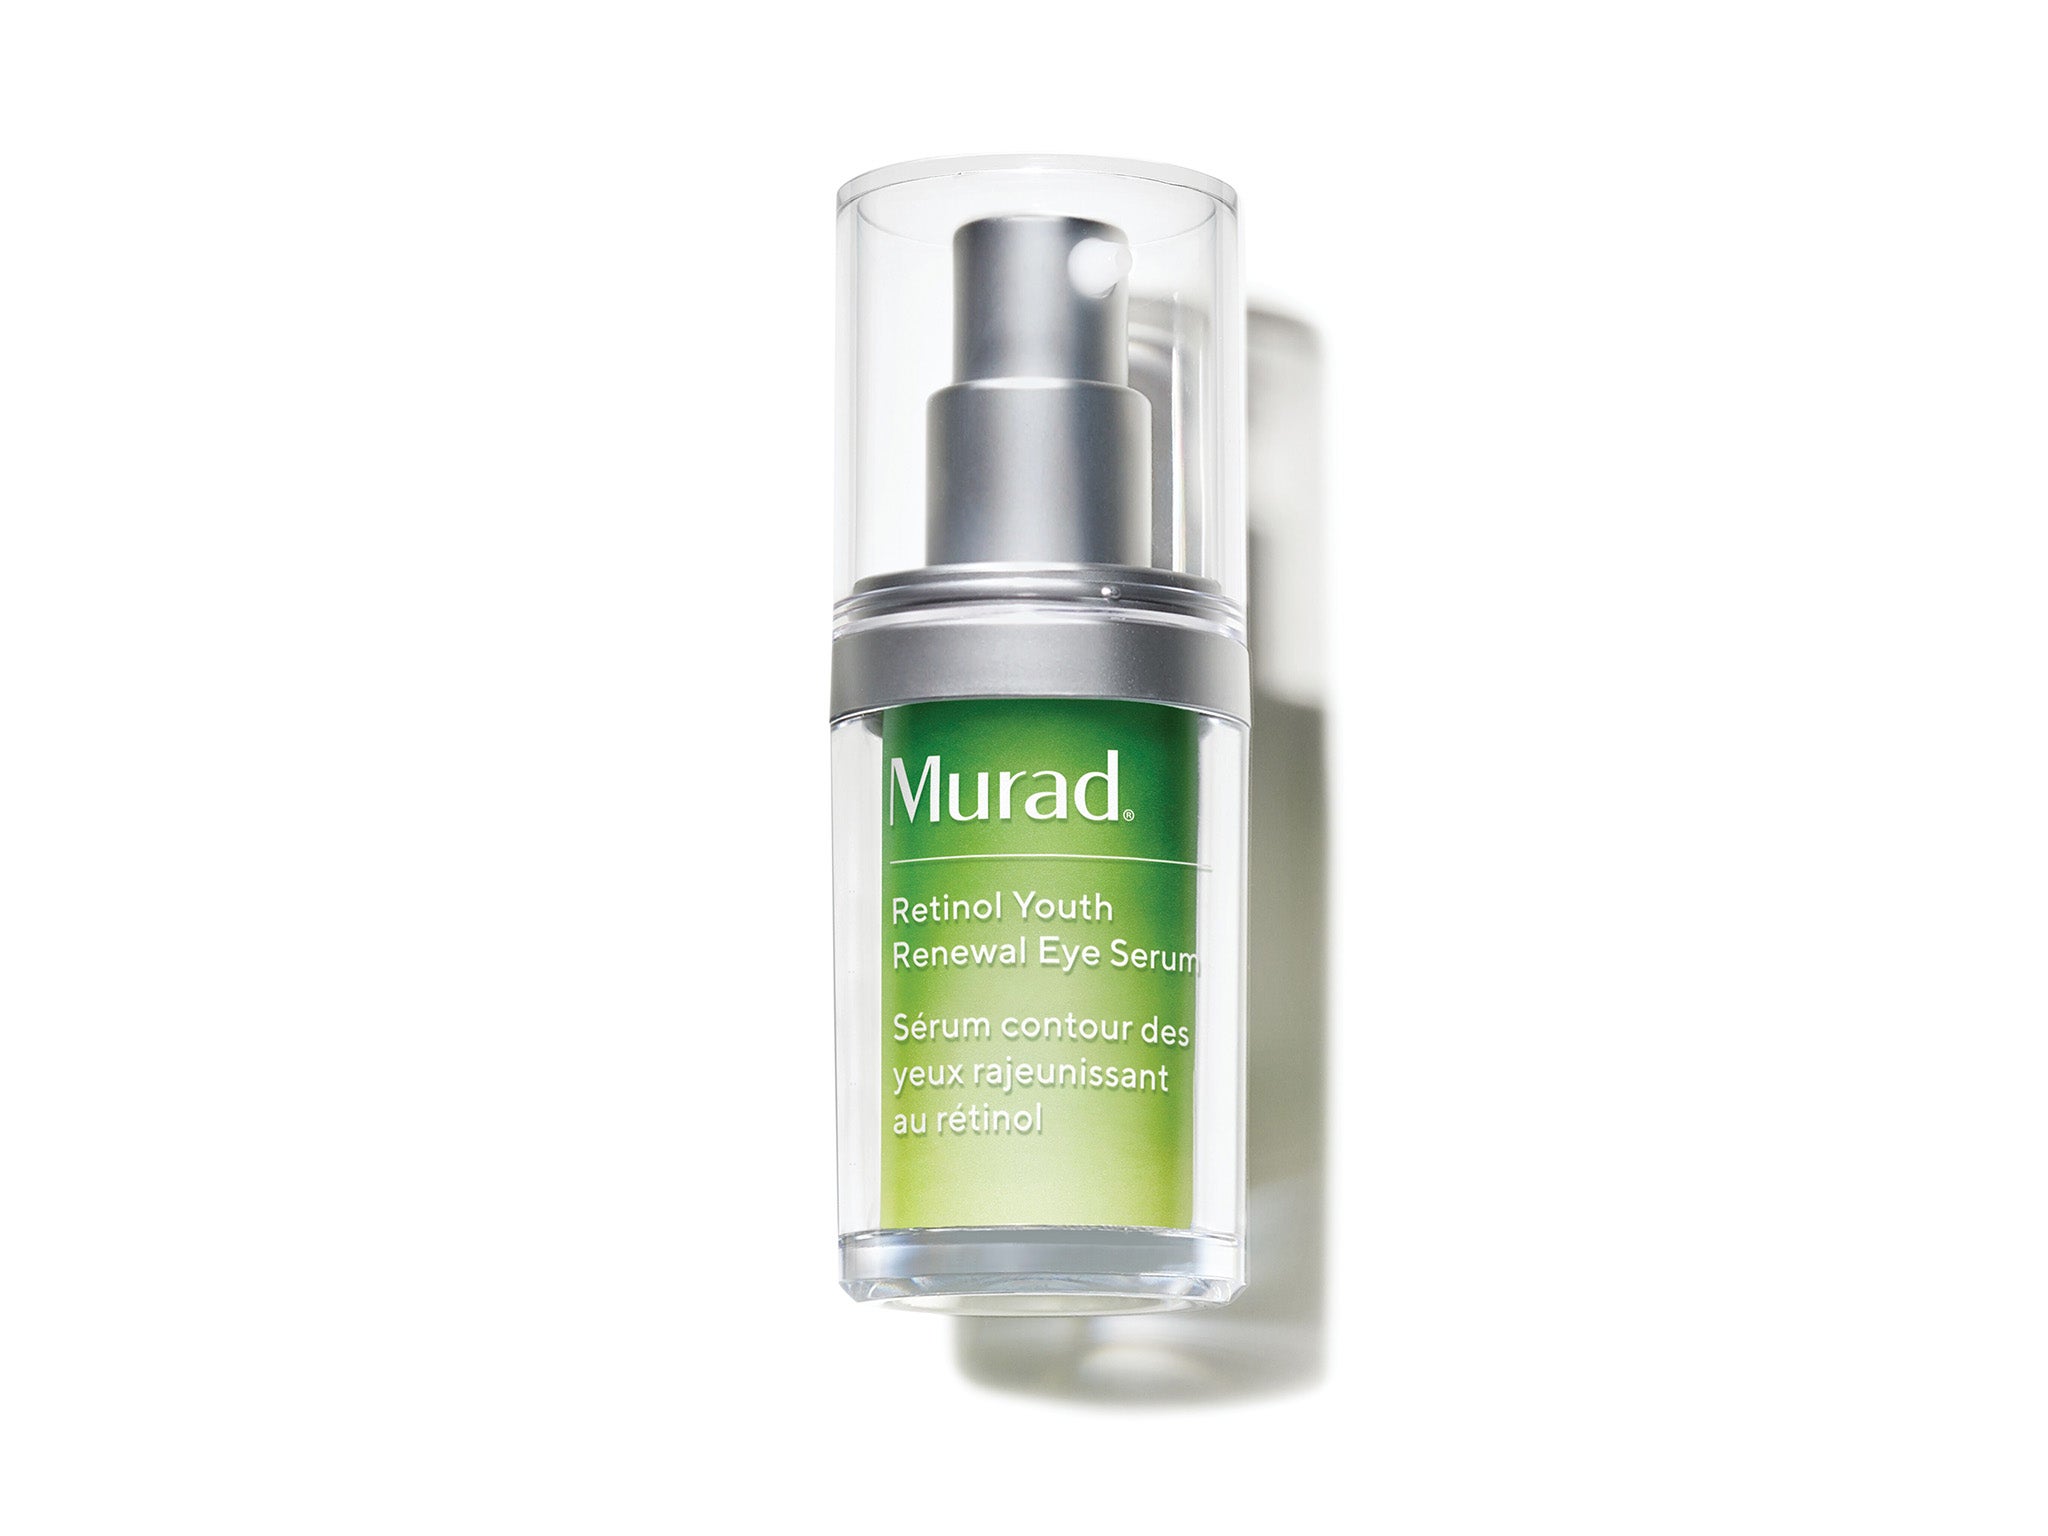 Murad retinol youth renewal eye serum